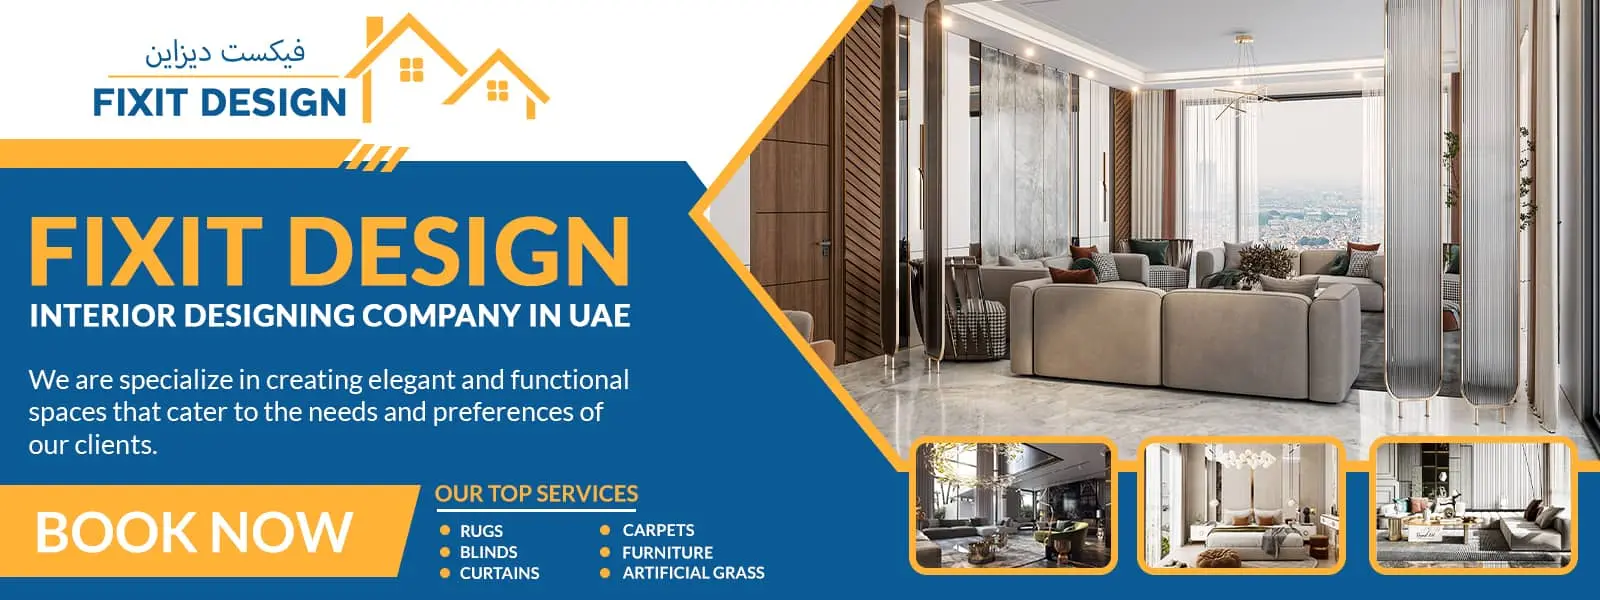 Luxury-Interior-Design-Dubai-Banner